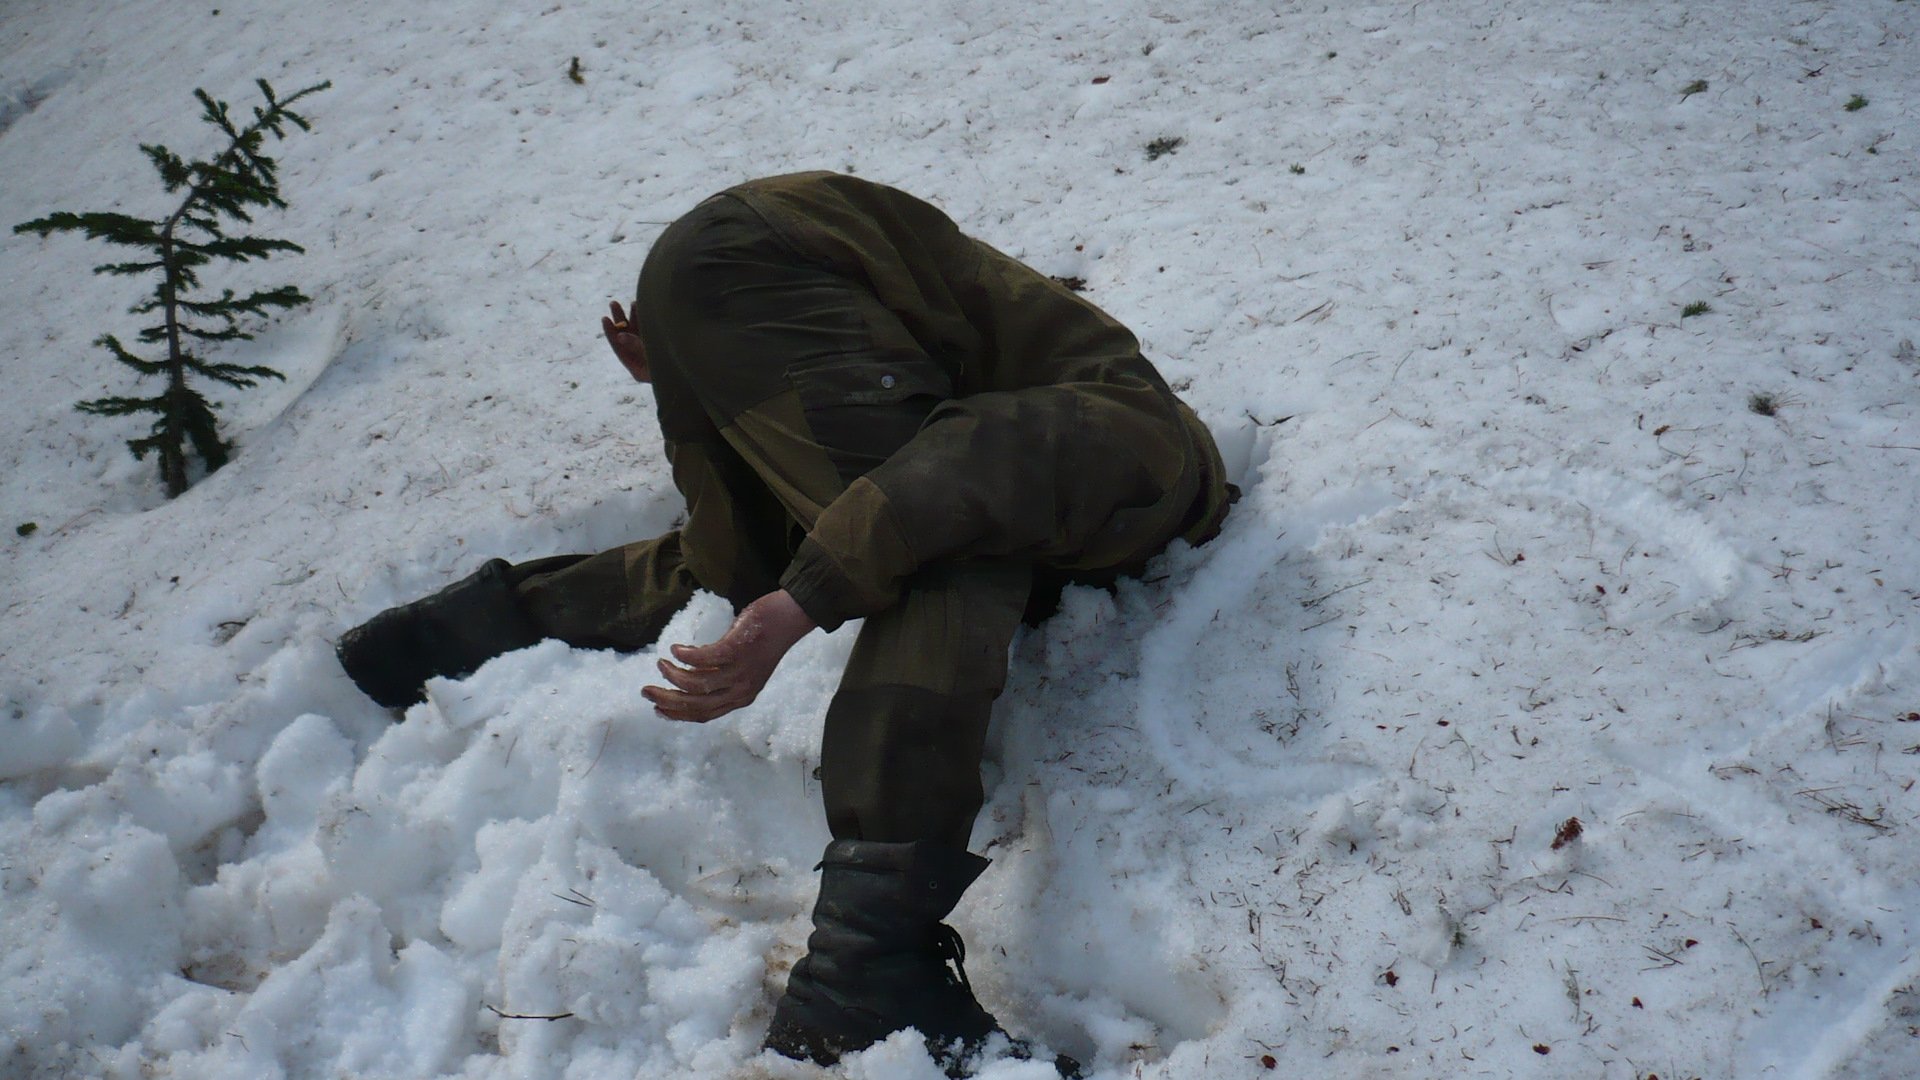 Голые русские бабы мастурбируют зимой в снегу (64 фото) - порно и фото голых на заточка63.рф